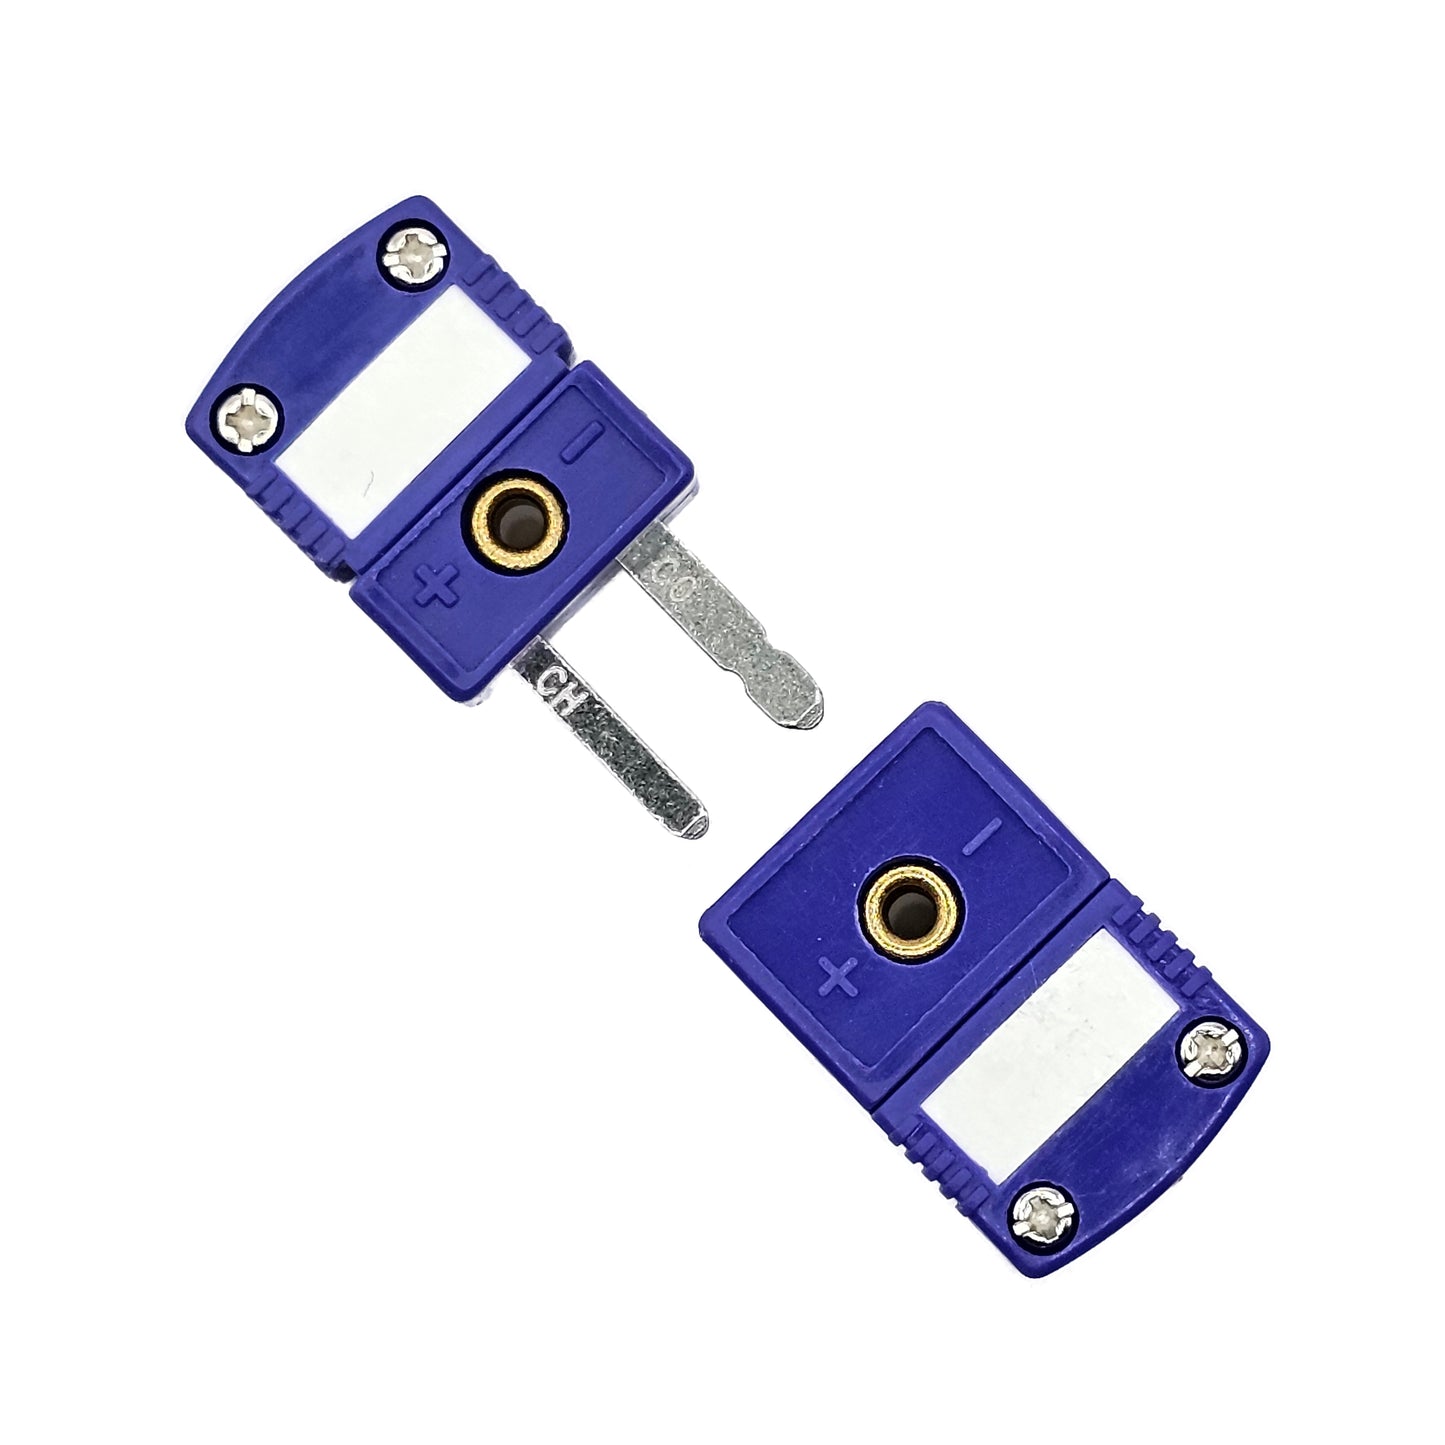 Type E Miniature Thermocouple Connector, Omega Style - Set